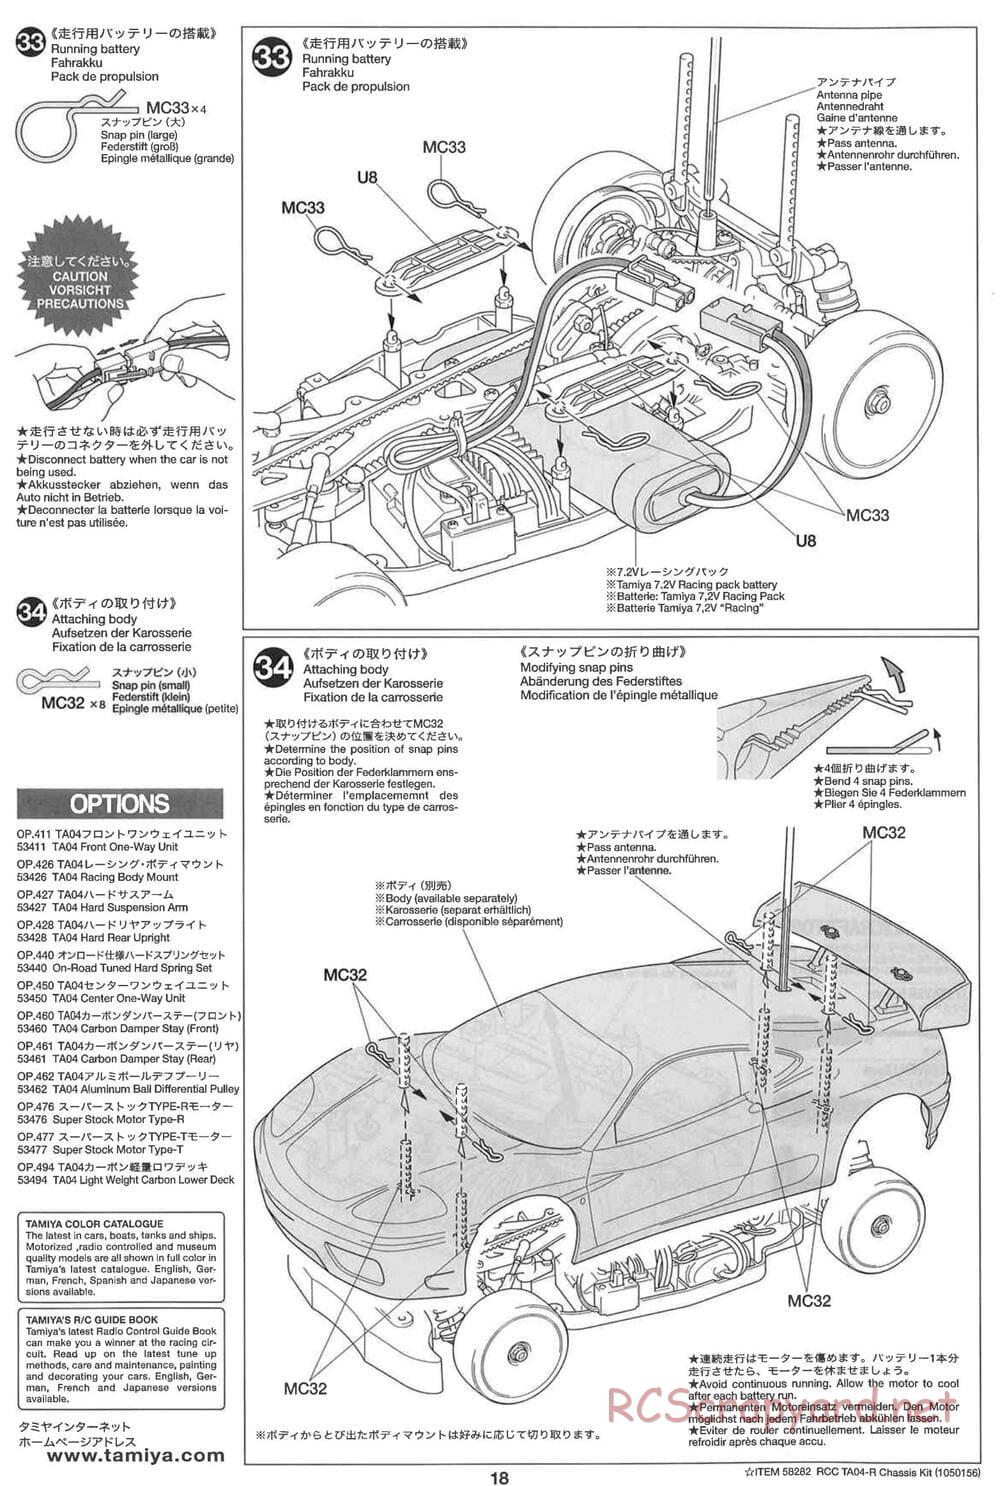 Tamiya - TA-04R Chassis - Manual - Page 18